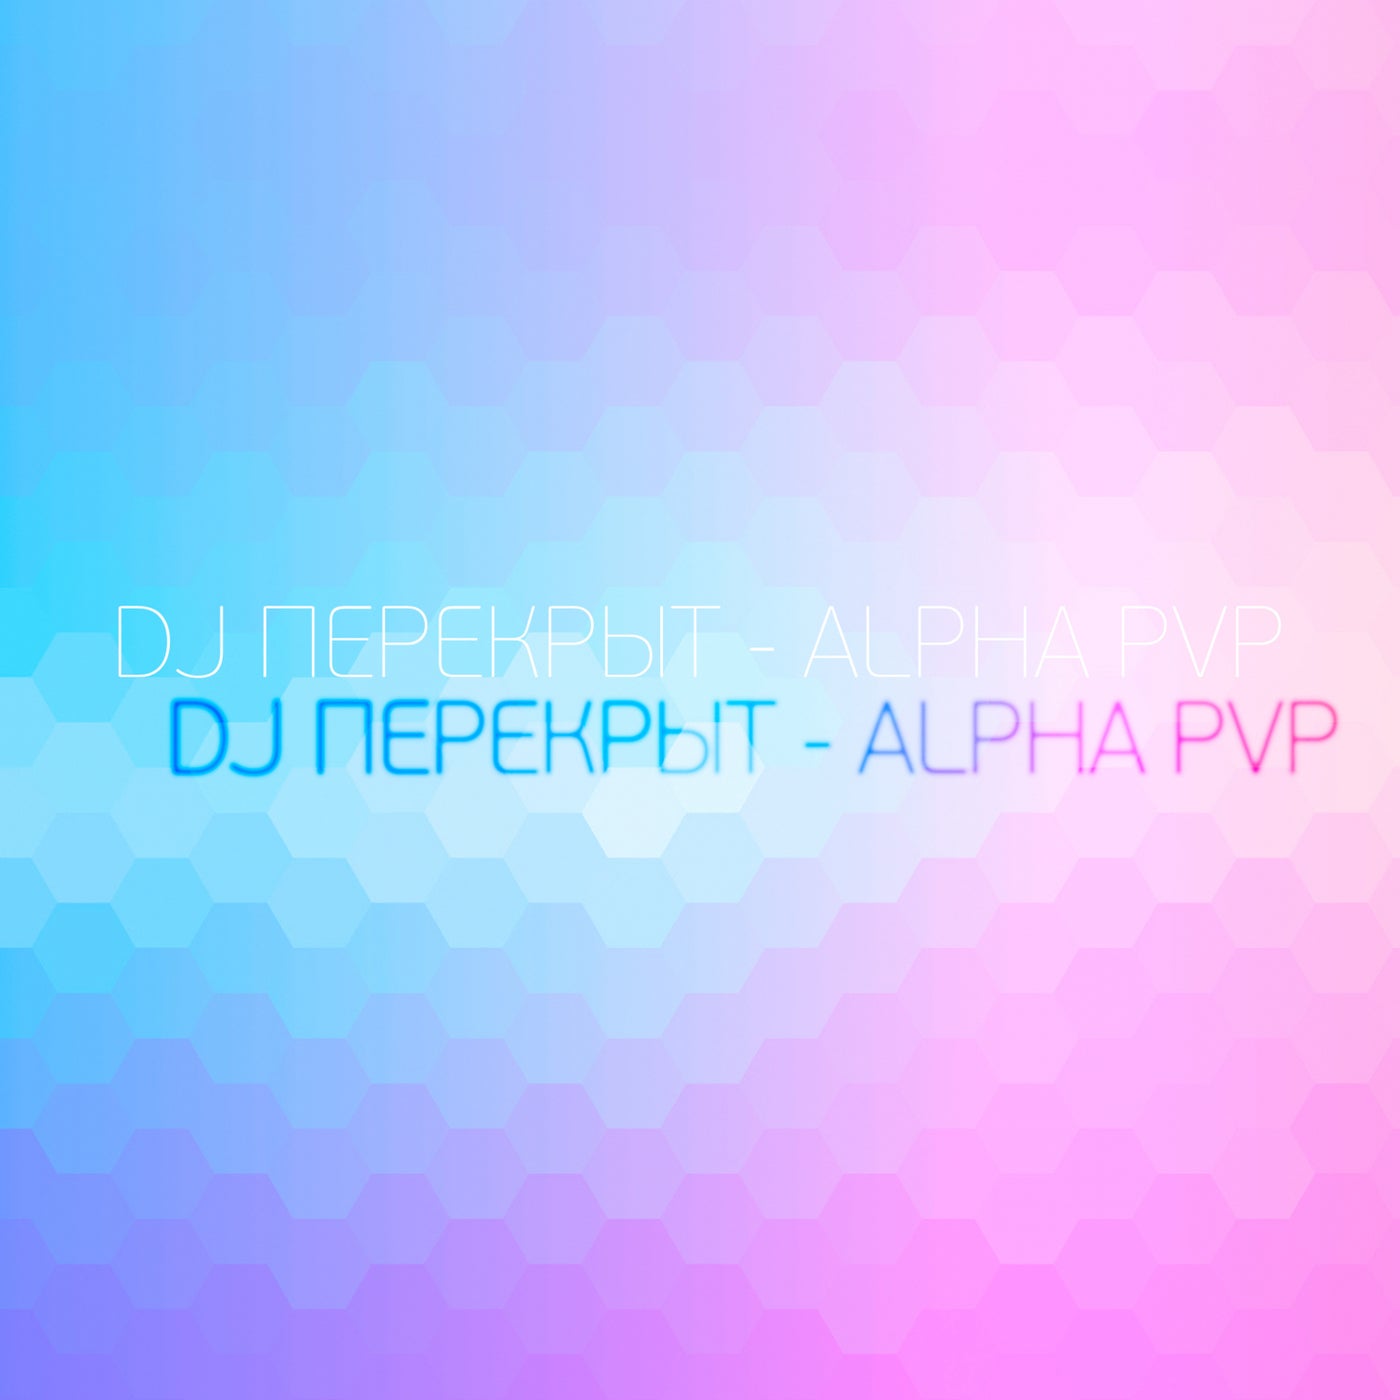 Alpha Pvp